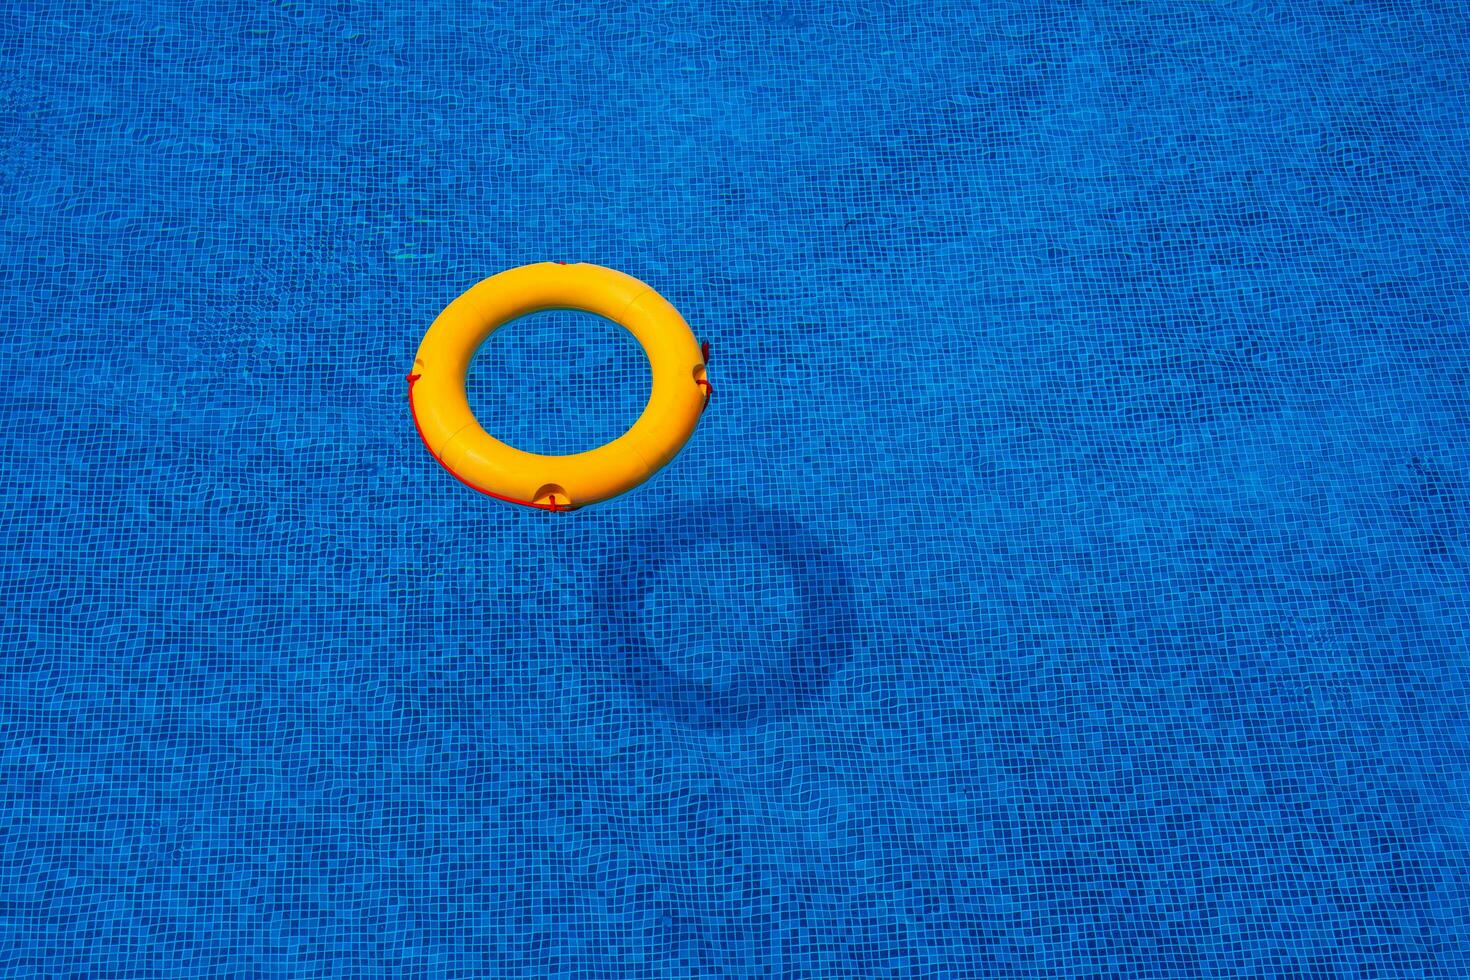 parte superior ver de boya salvavidas flotante en azul nadando piscina, suave enfocar. foto